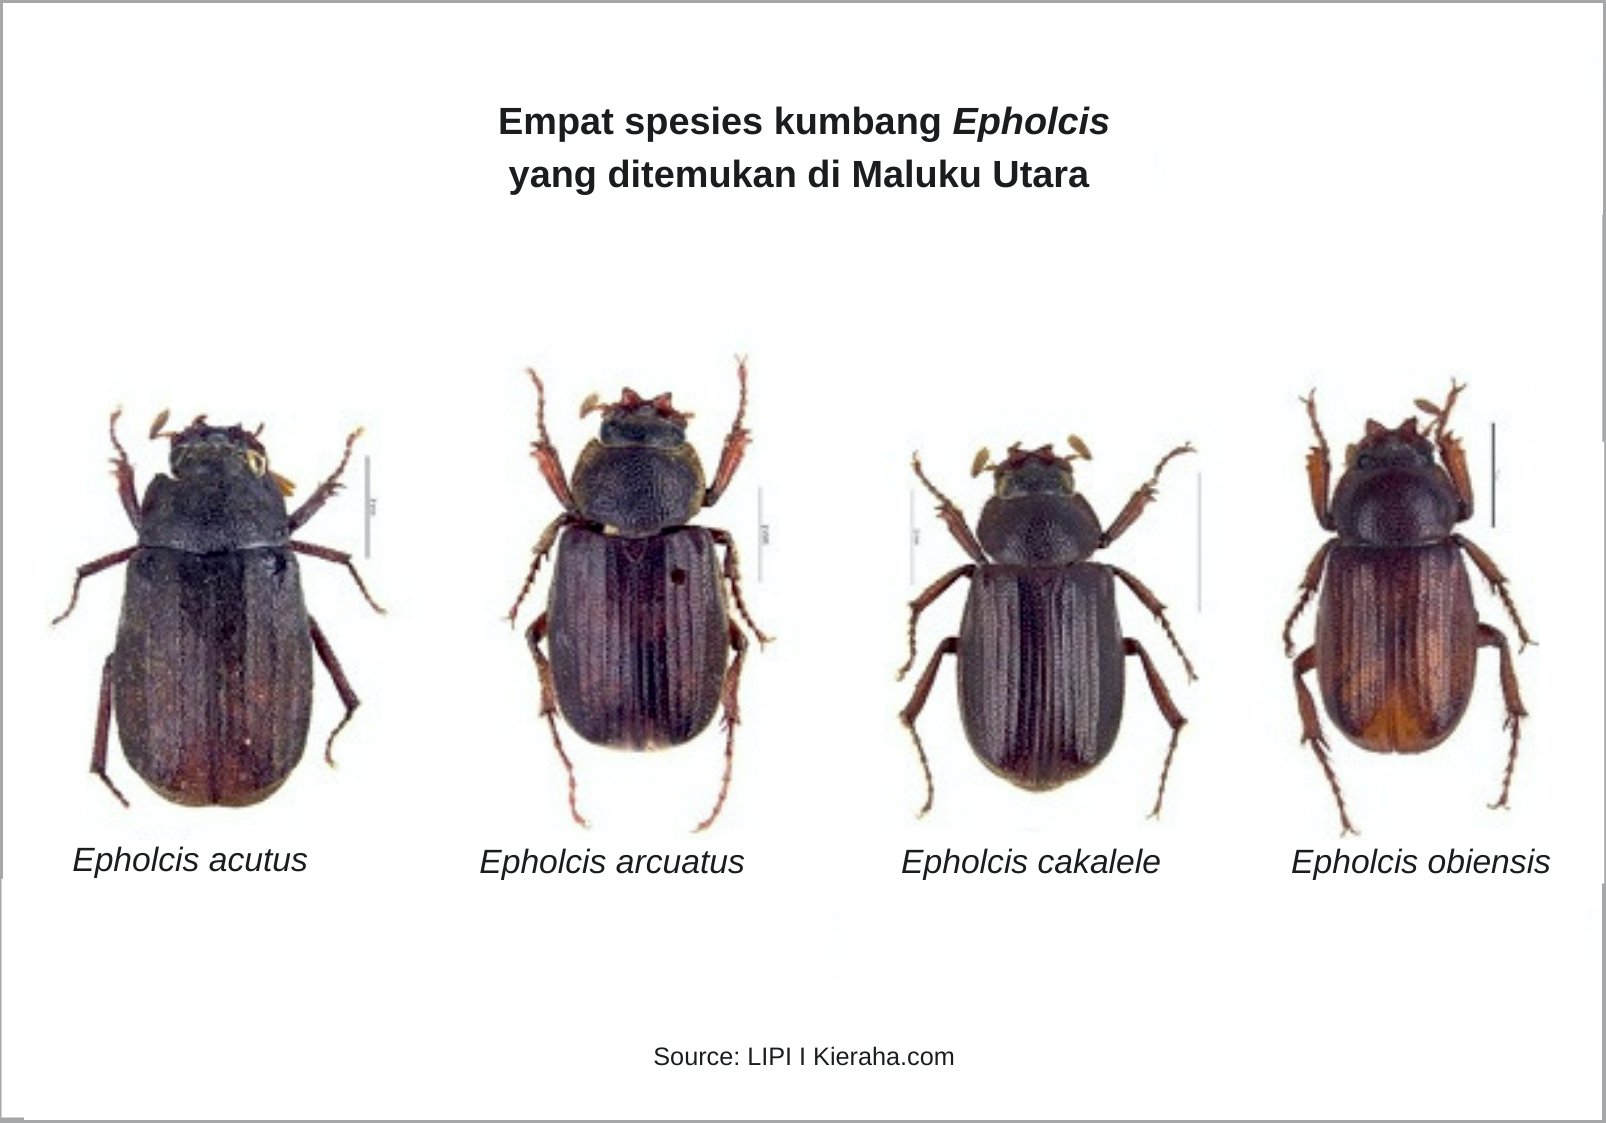 Temuan Baru Empat Spesies Kumbang di Maluku Utara